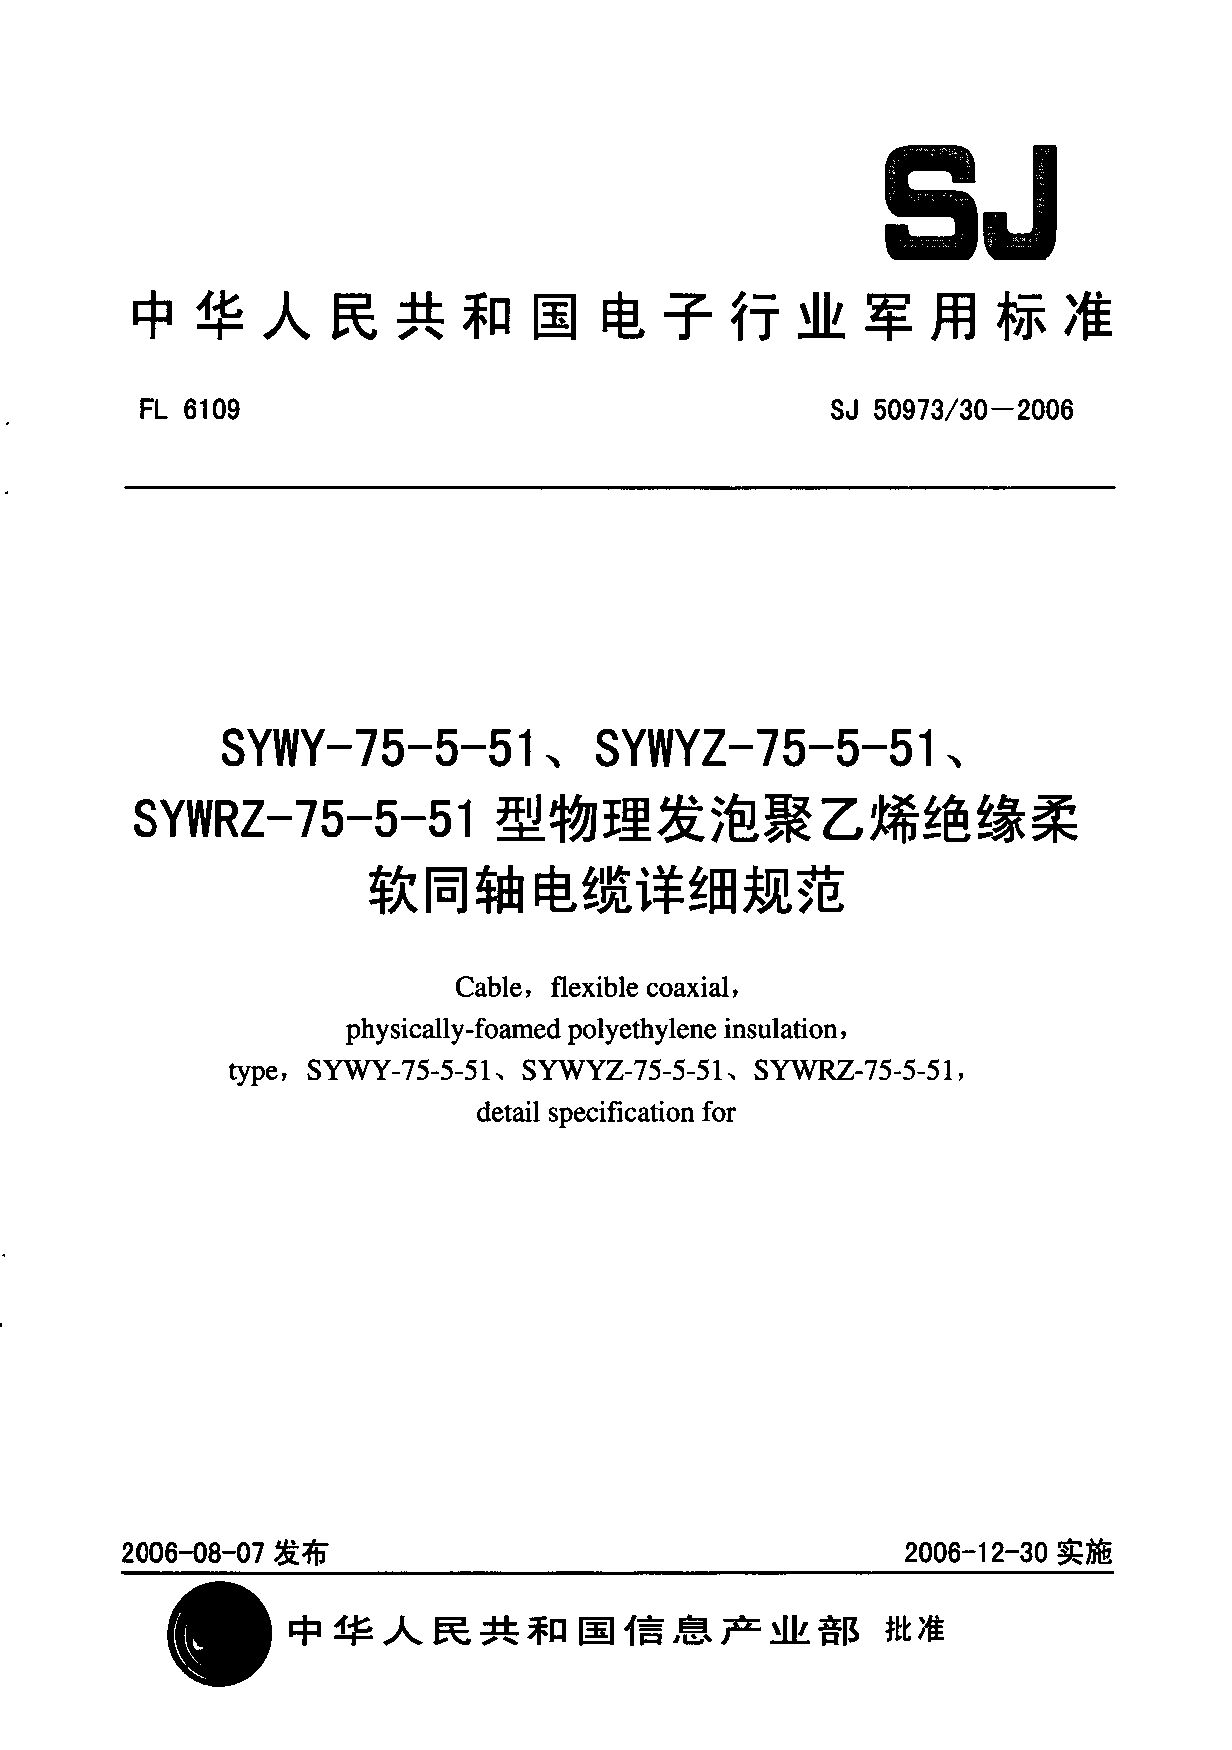 SJ 50973/30-2006封面图